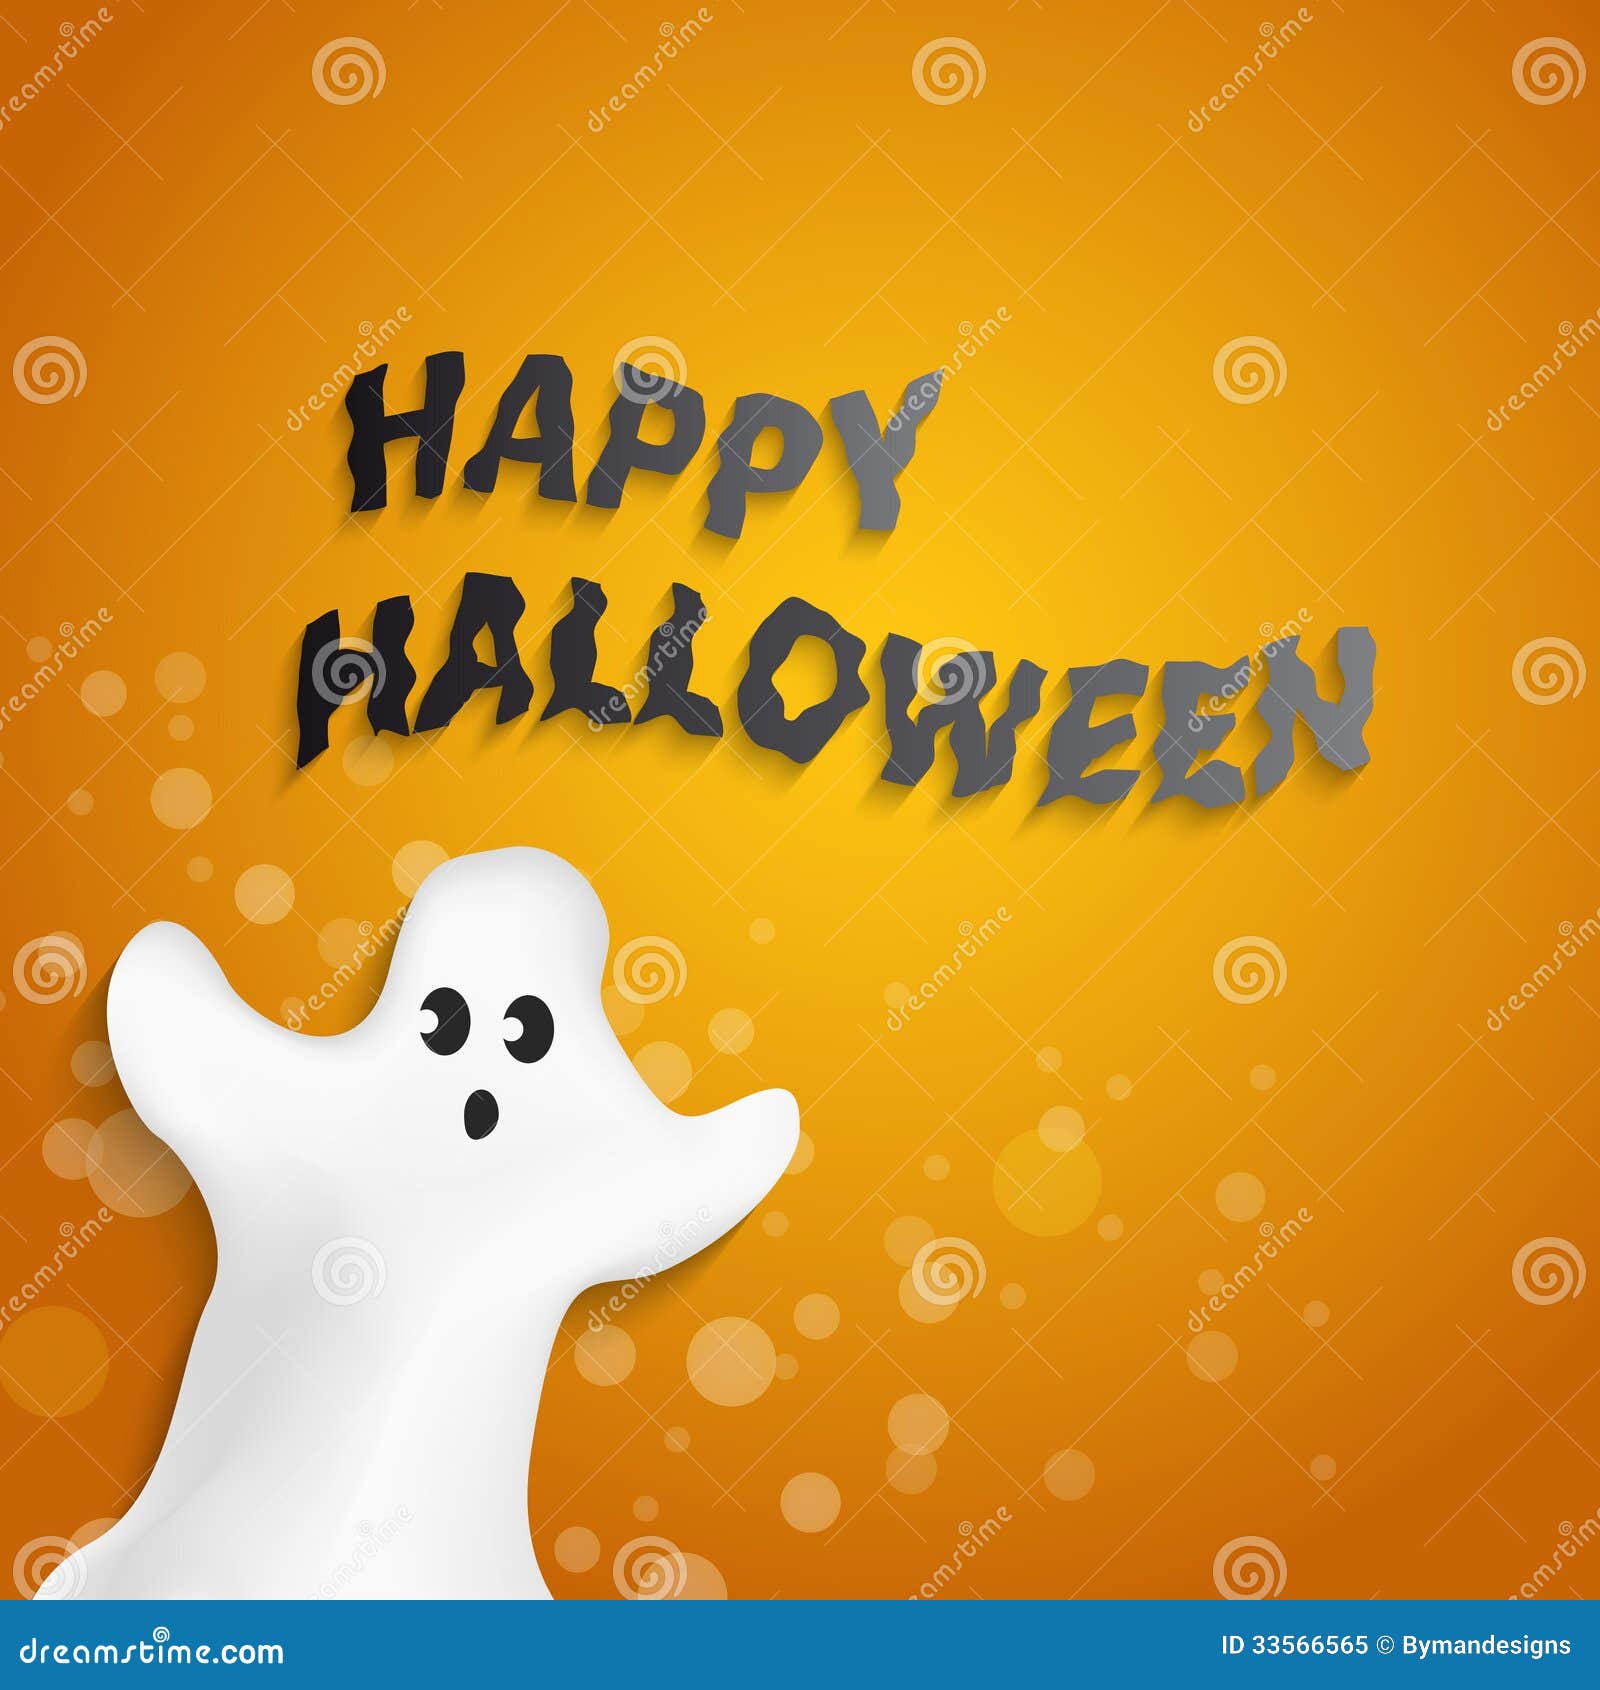 Bom dia Halloween! Confira mensagens e frases engraçadas e arrepiantes para  mandar para os amigos em comemoração ao Dia das Bruxas